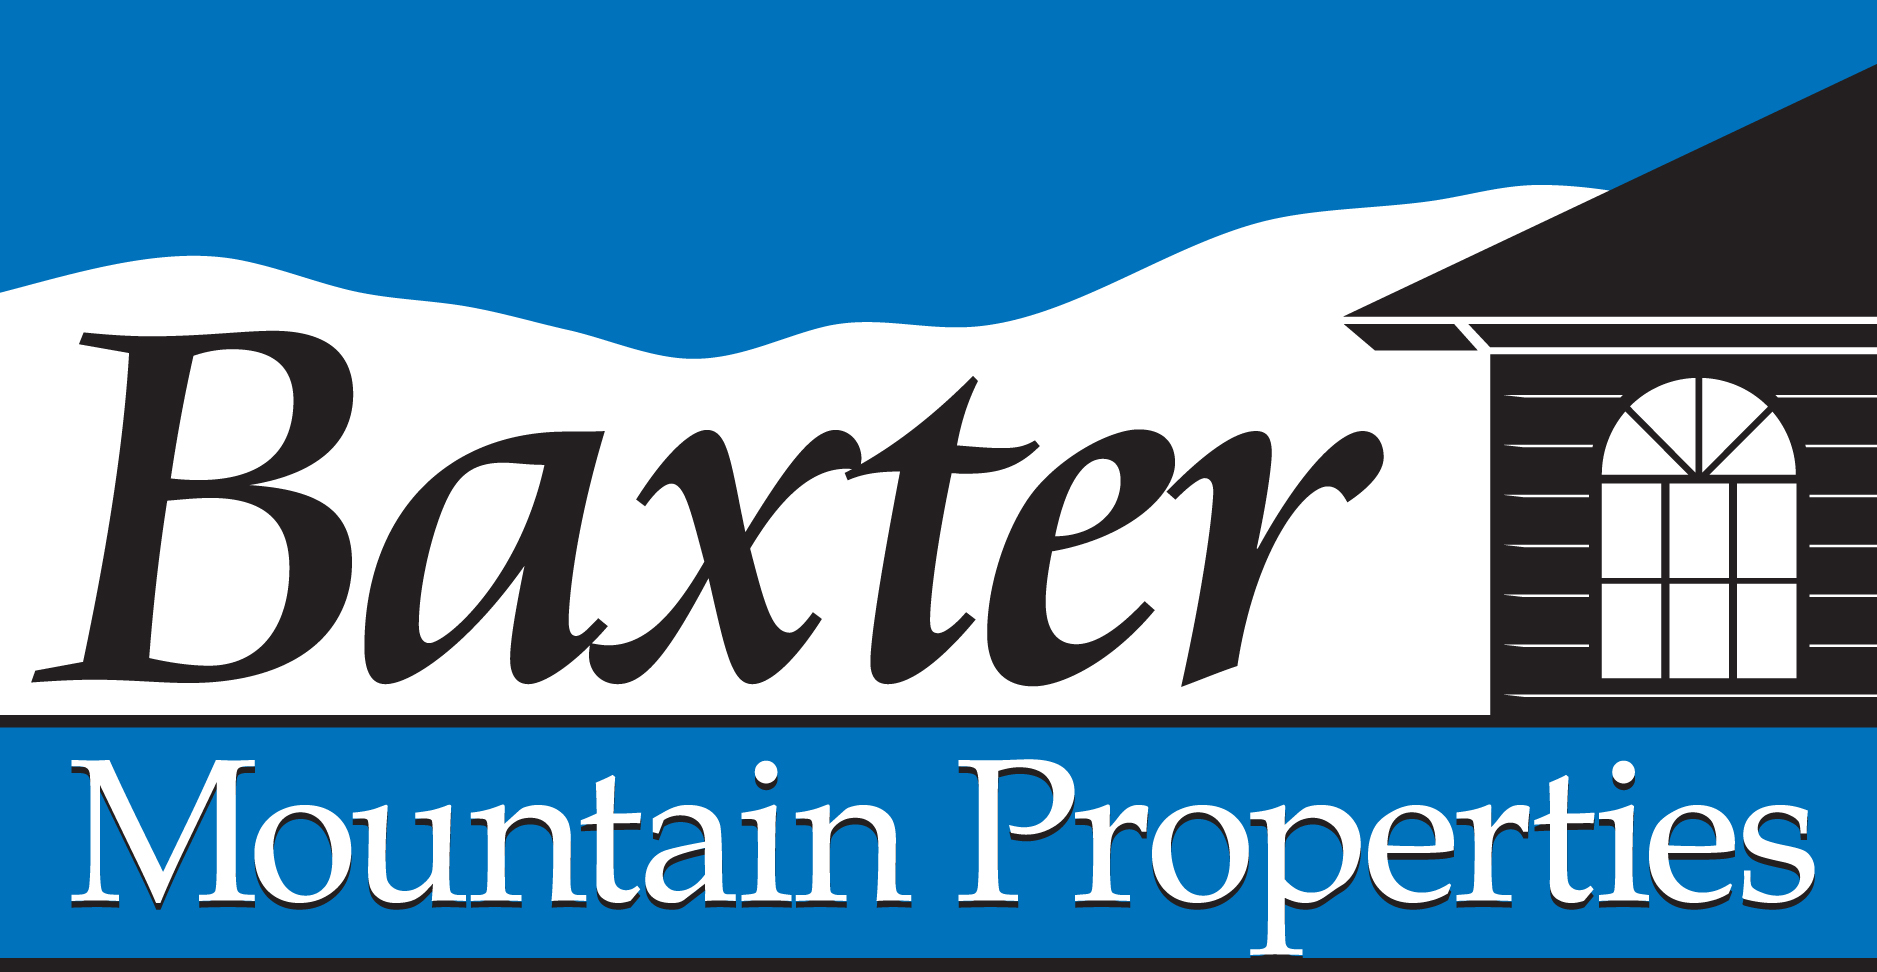 Baxter Mountain Properties